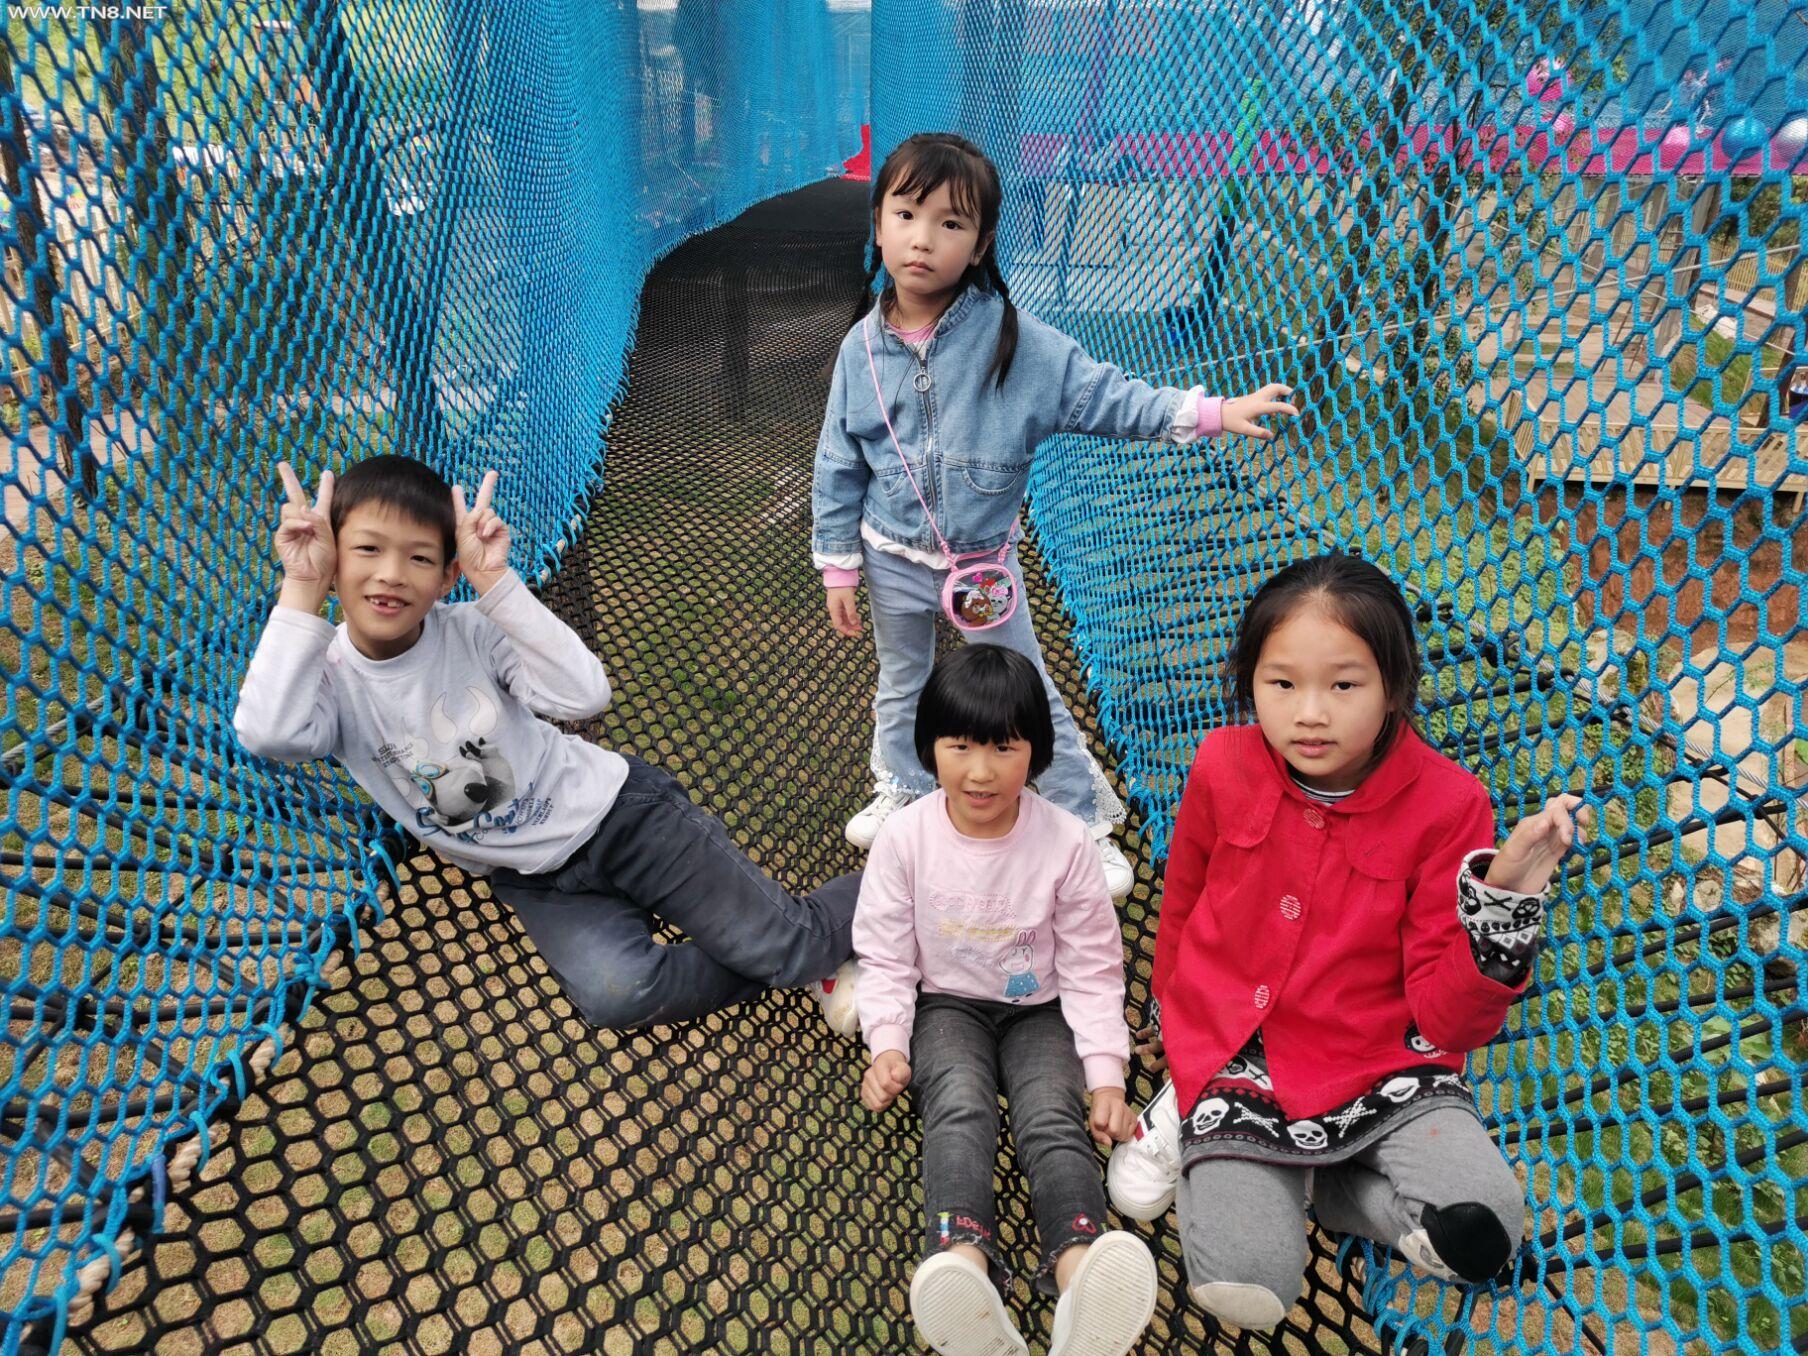 重庆丰都有个新奇的“丛林部落”儿童乐园